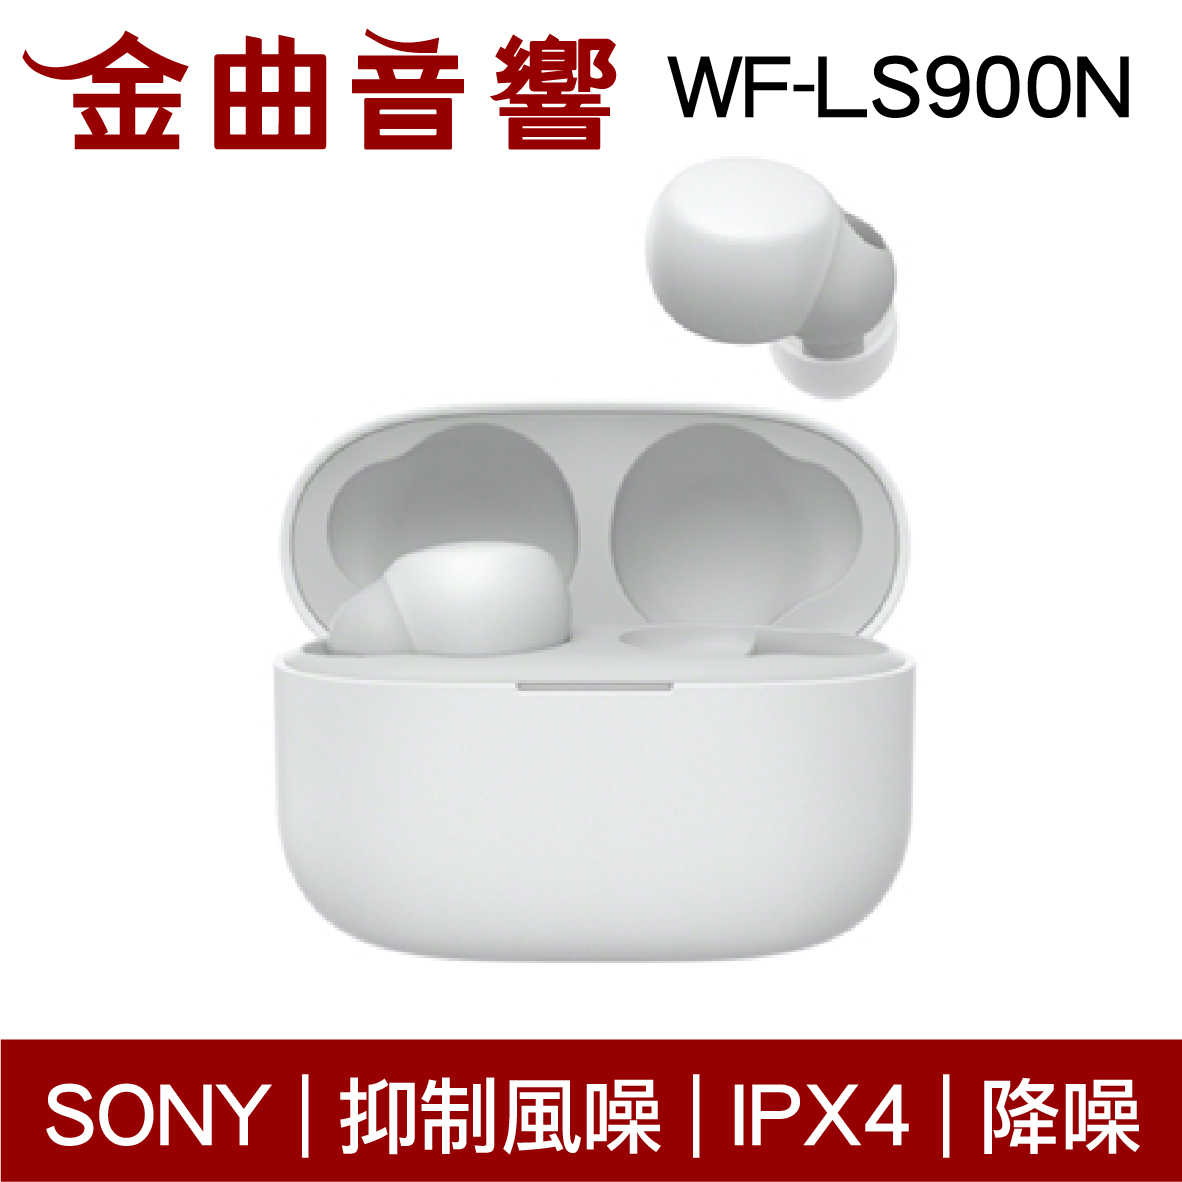 SONY 索尼 WF-LS900N 白色 LinkBuds S 主動降噪 IPX4 真無線 藍芽耳機 | 金曲音響